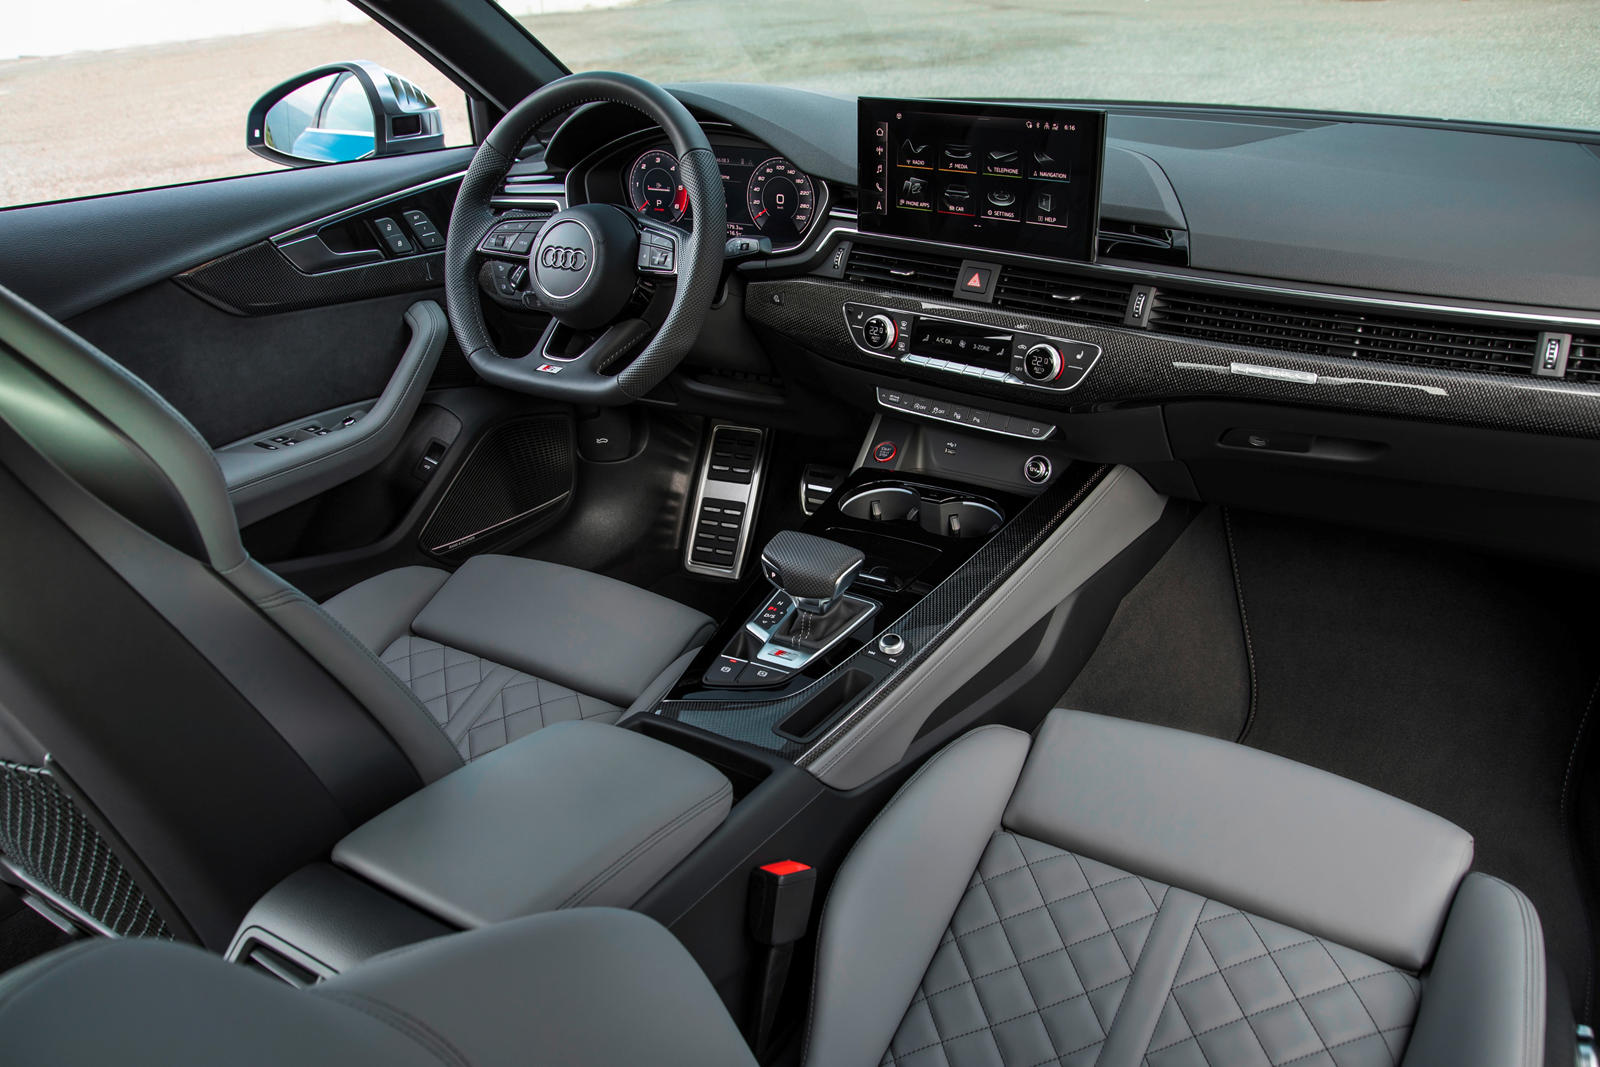 2021 Audi S4 Sedan Review, Trims, Specs, Price, New Interior Features